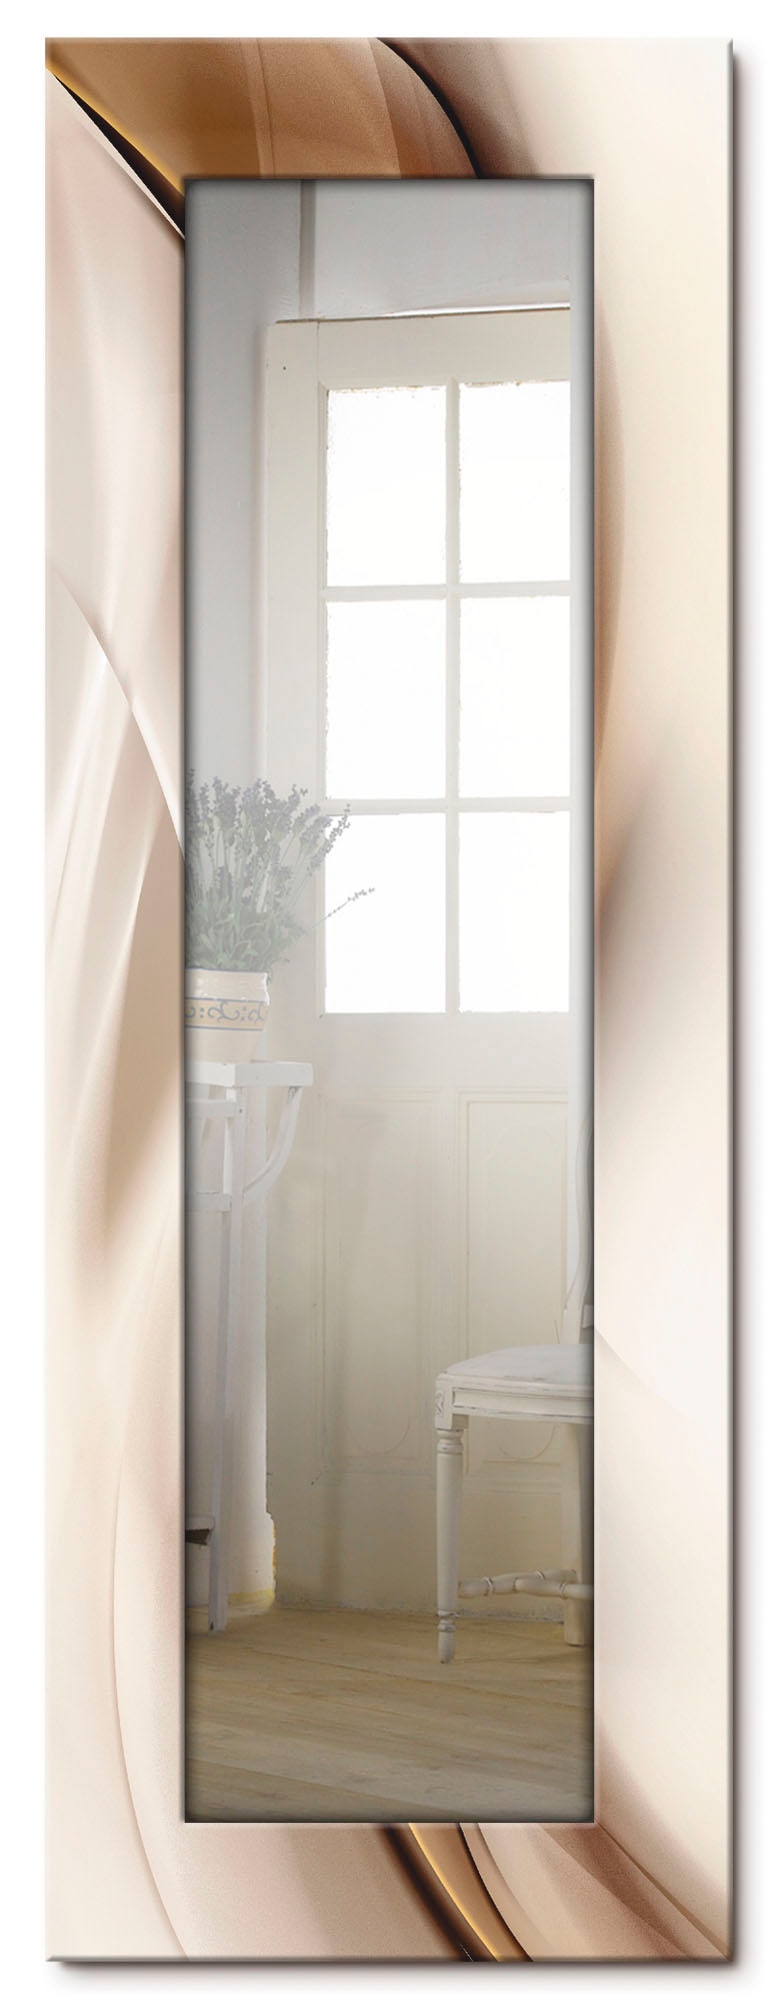 Artland Dekospiegel »Braune abstrakte Welle«, gerahmter Ganzkörperspiegel, Wandspiegel, mit Motivrahmen, Landhaus